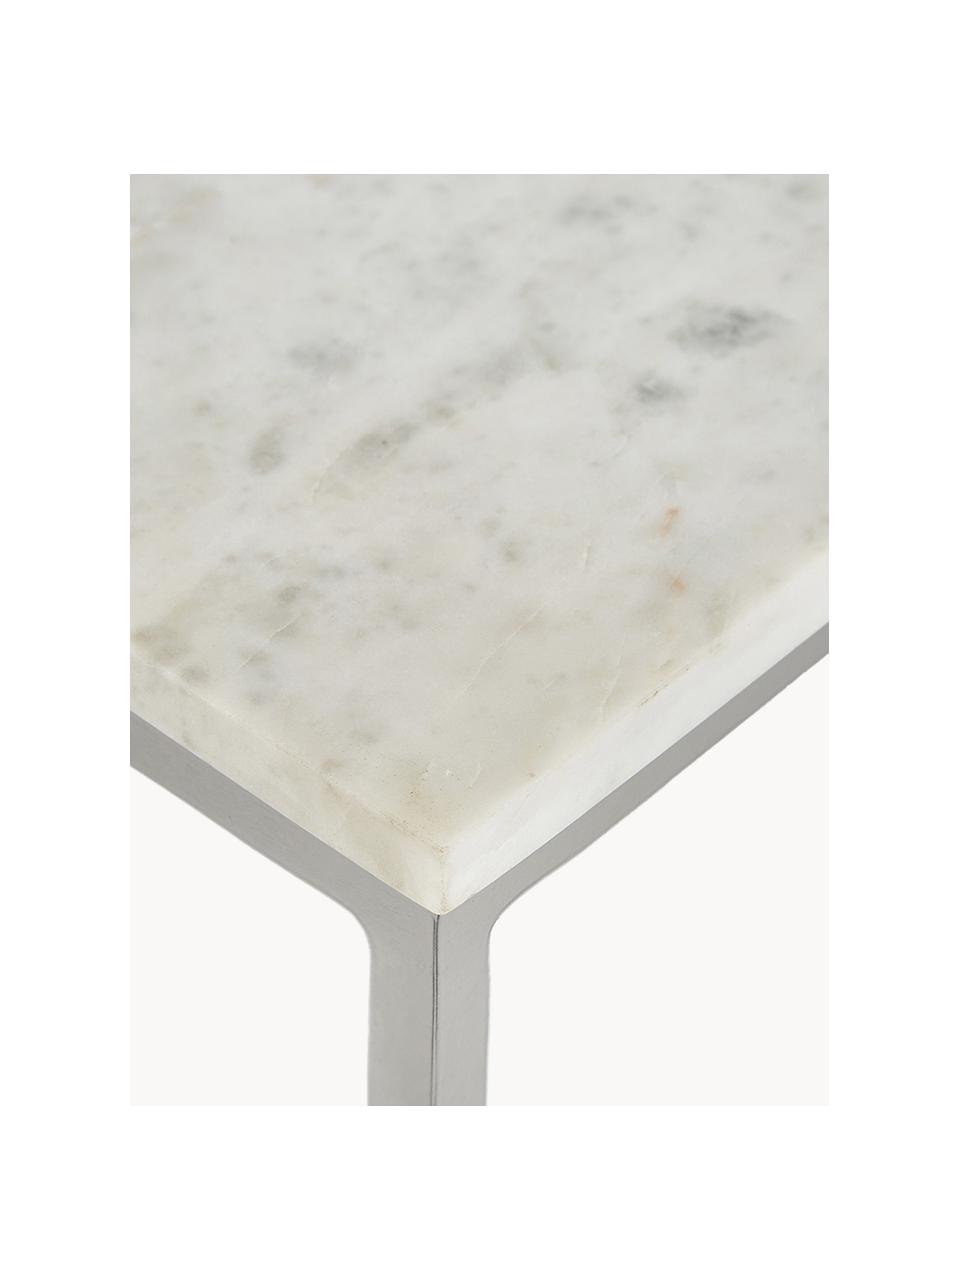 Großer Marmor-Couchtisch Alys, Tischplatte: Marmor, Gestell: Metall, pulverbeschichtet, Weiß, marmoriert, Silberfarben, B 120 x T 75 cm